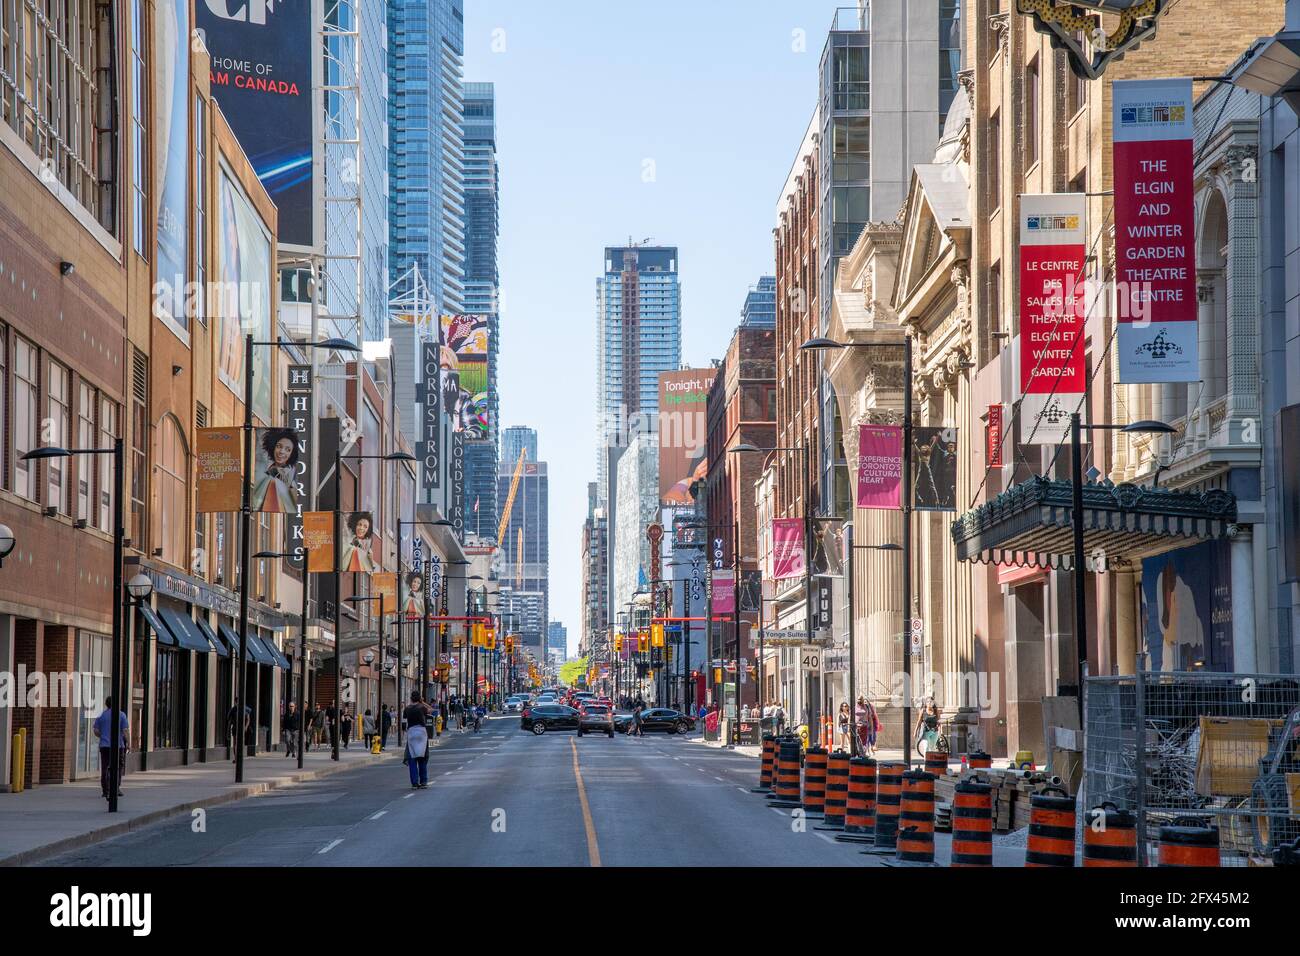 Yonge Street in der Innenstadt von Toronto, Kanada. Sicht von Süden nach Norden. Eine Person mit psychischen Problemen wird in der Mitte der Bude gesehen Stockfoto